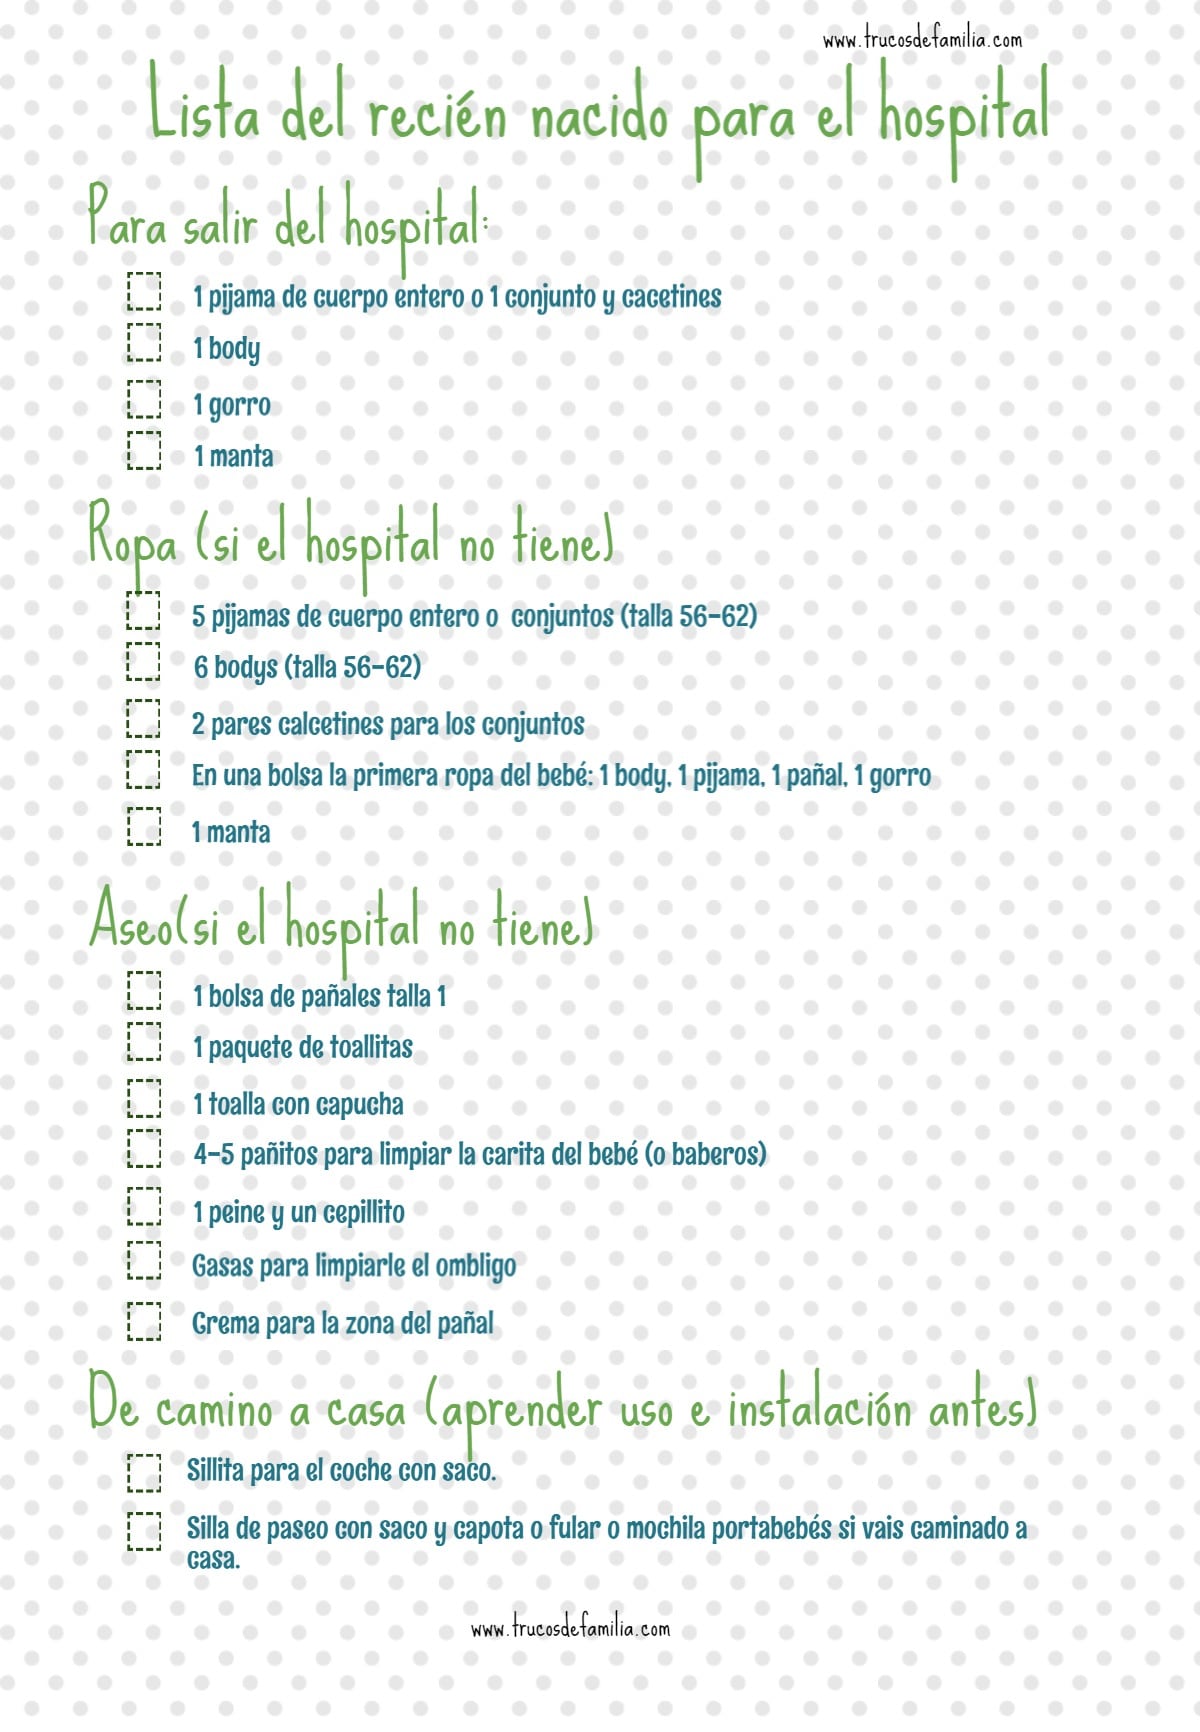 Checklist de la bolsa del recién nacido para el hospital